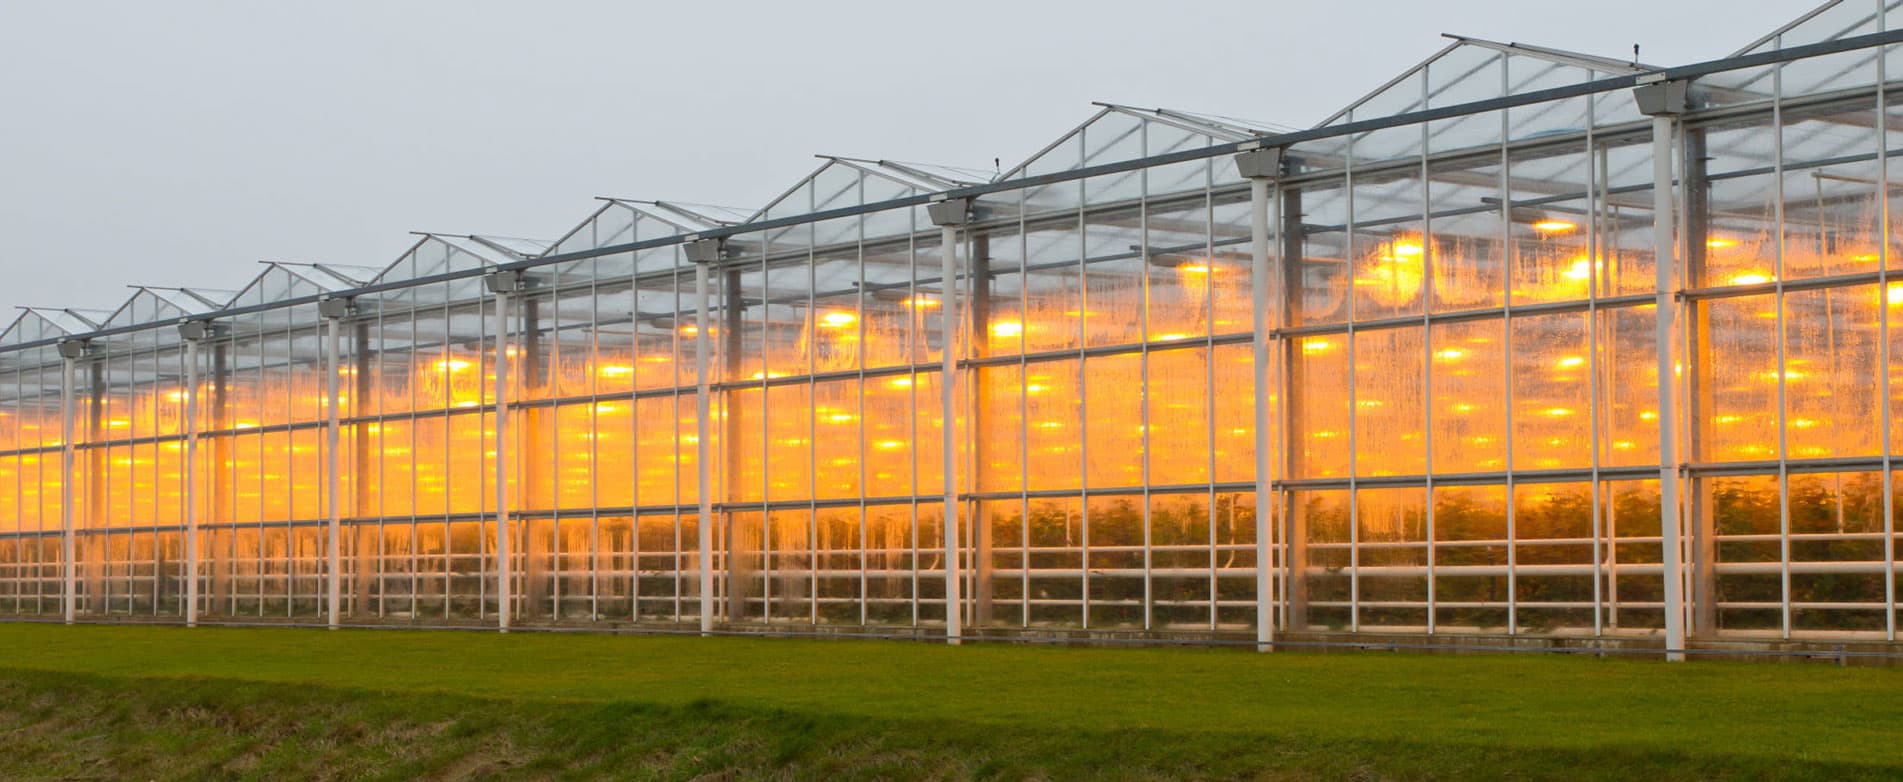 Led Grow Lights Voor Verticale Landbouw